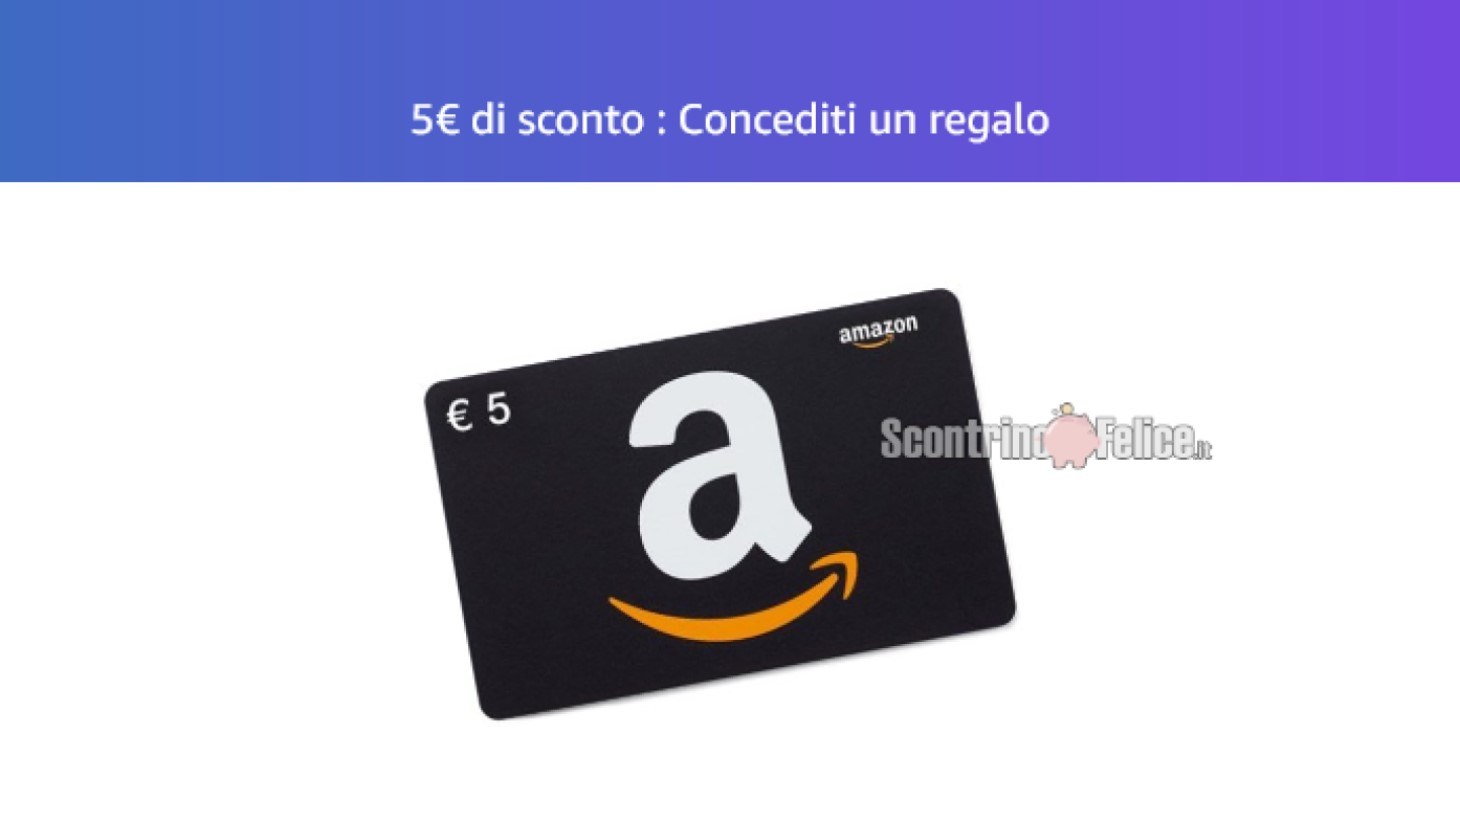 Buono sconto Amazon da 5 euro “Concediti un regalo”: scopri subito se sei stato selezionato!